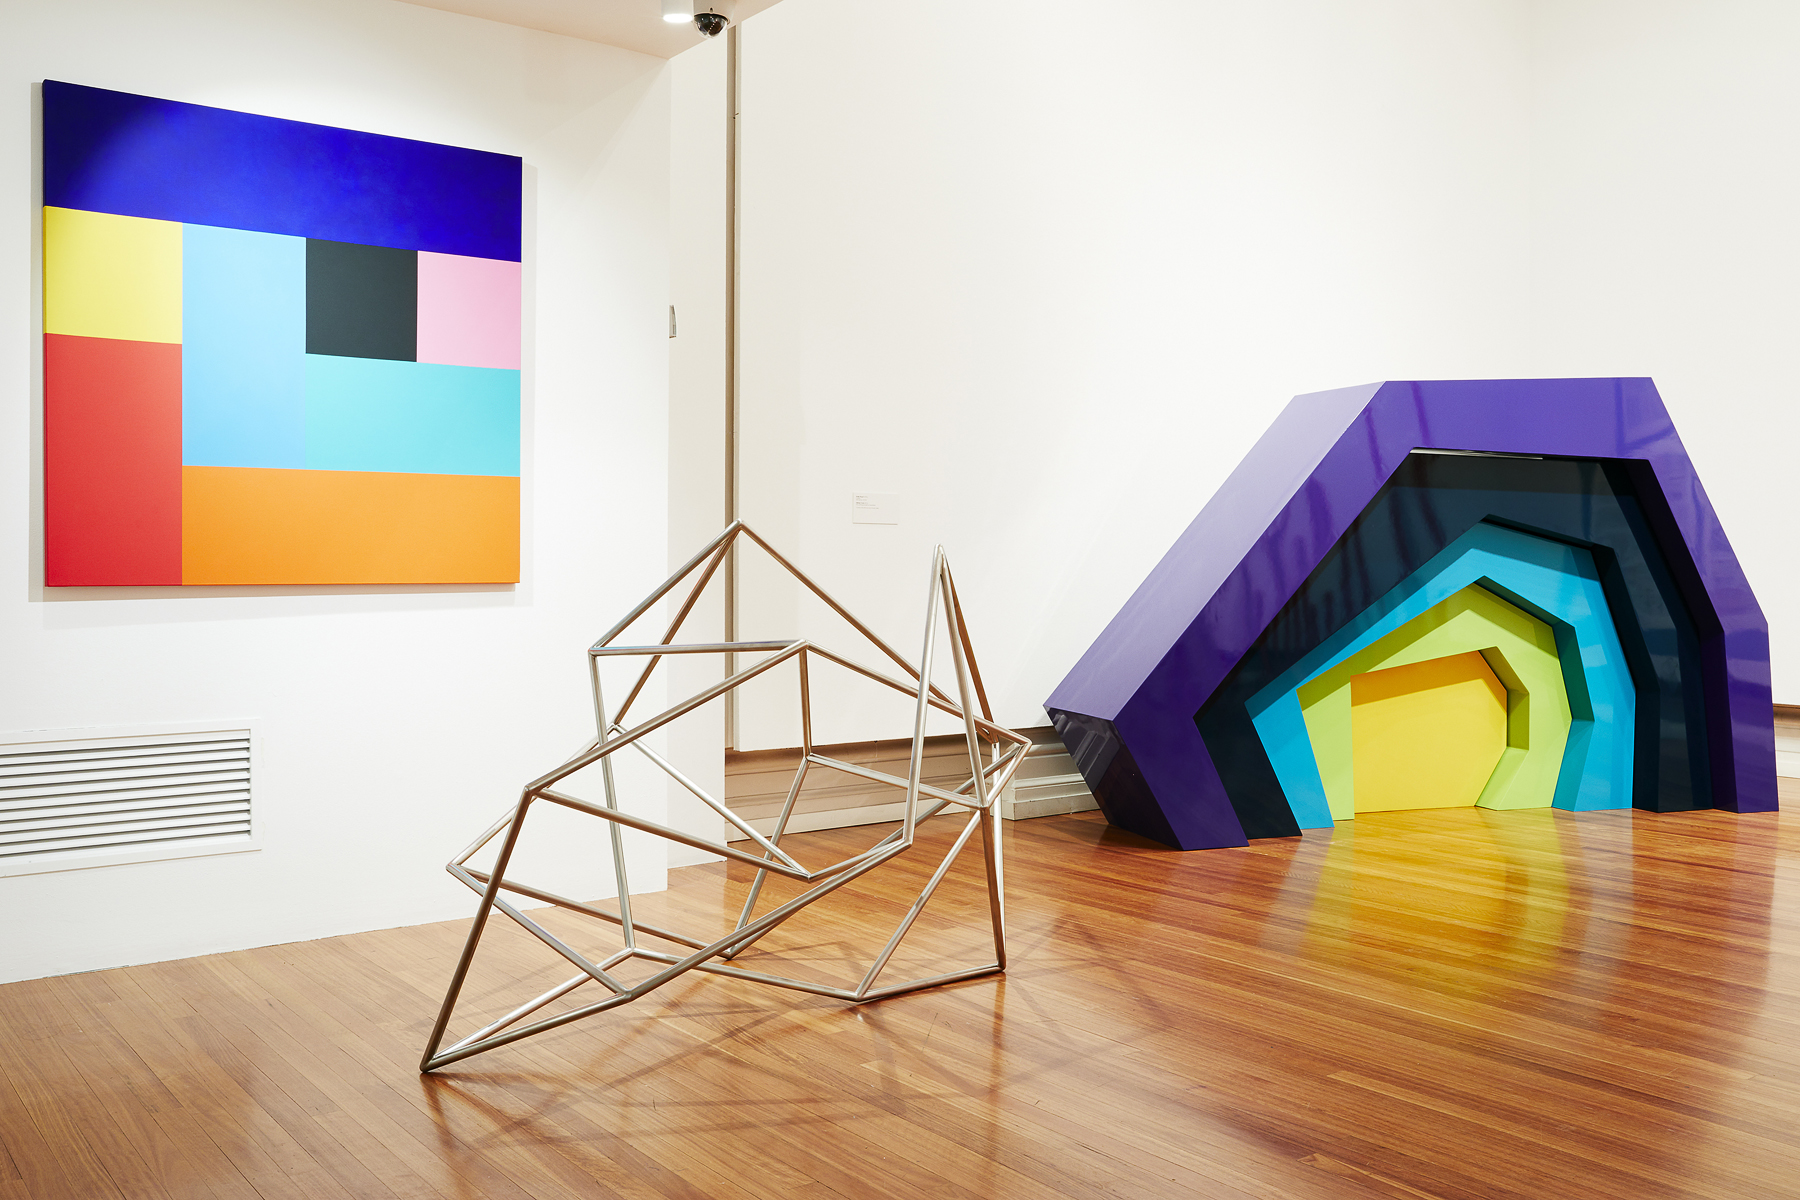 Melbourne Modern exhibition installation by Stephanie Bradford 